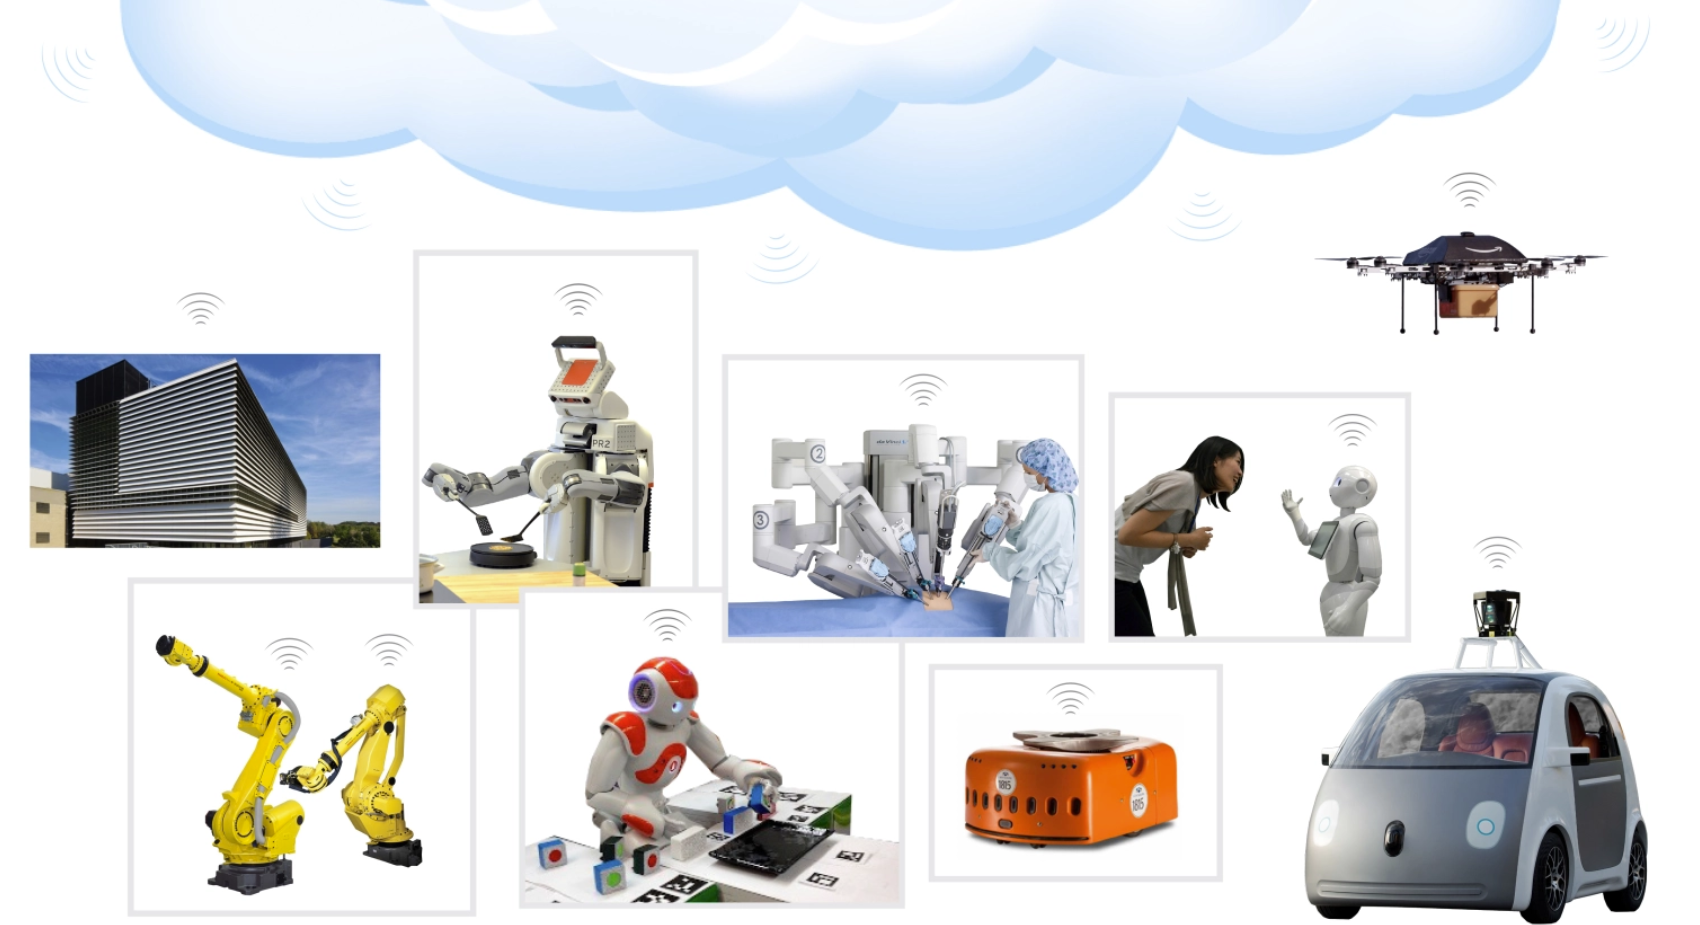 
Các ví dụ về robot đám mây
